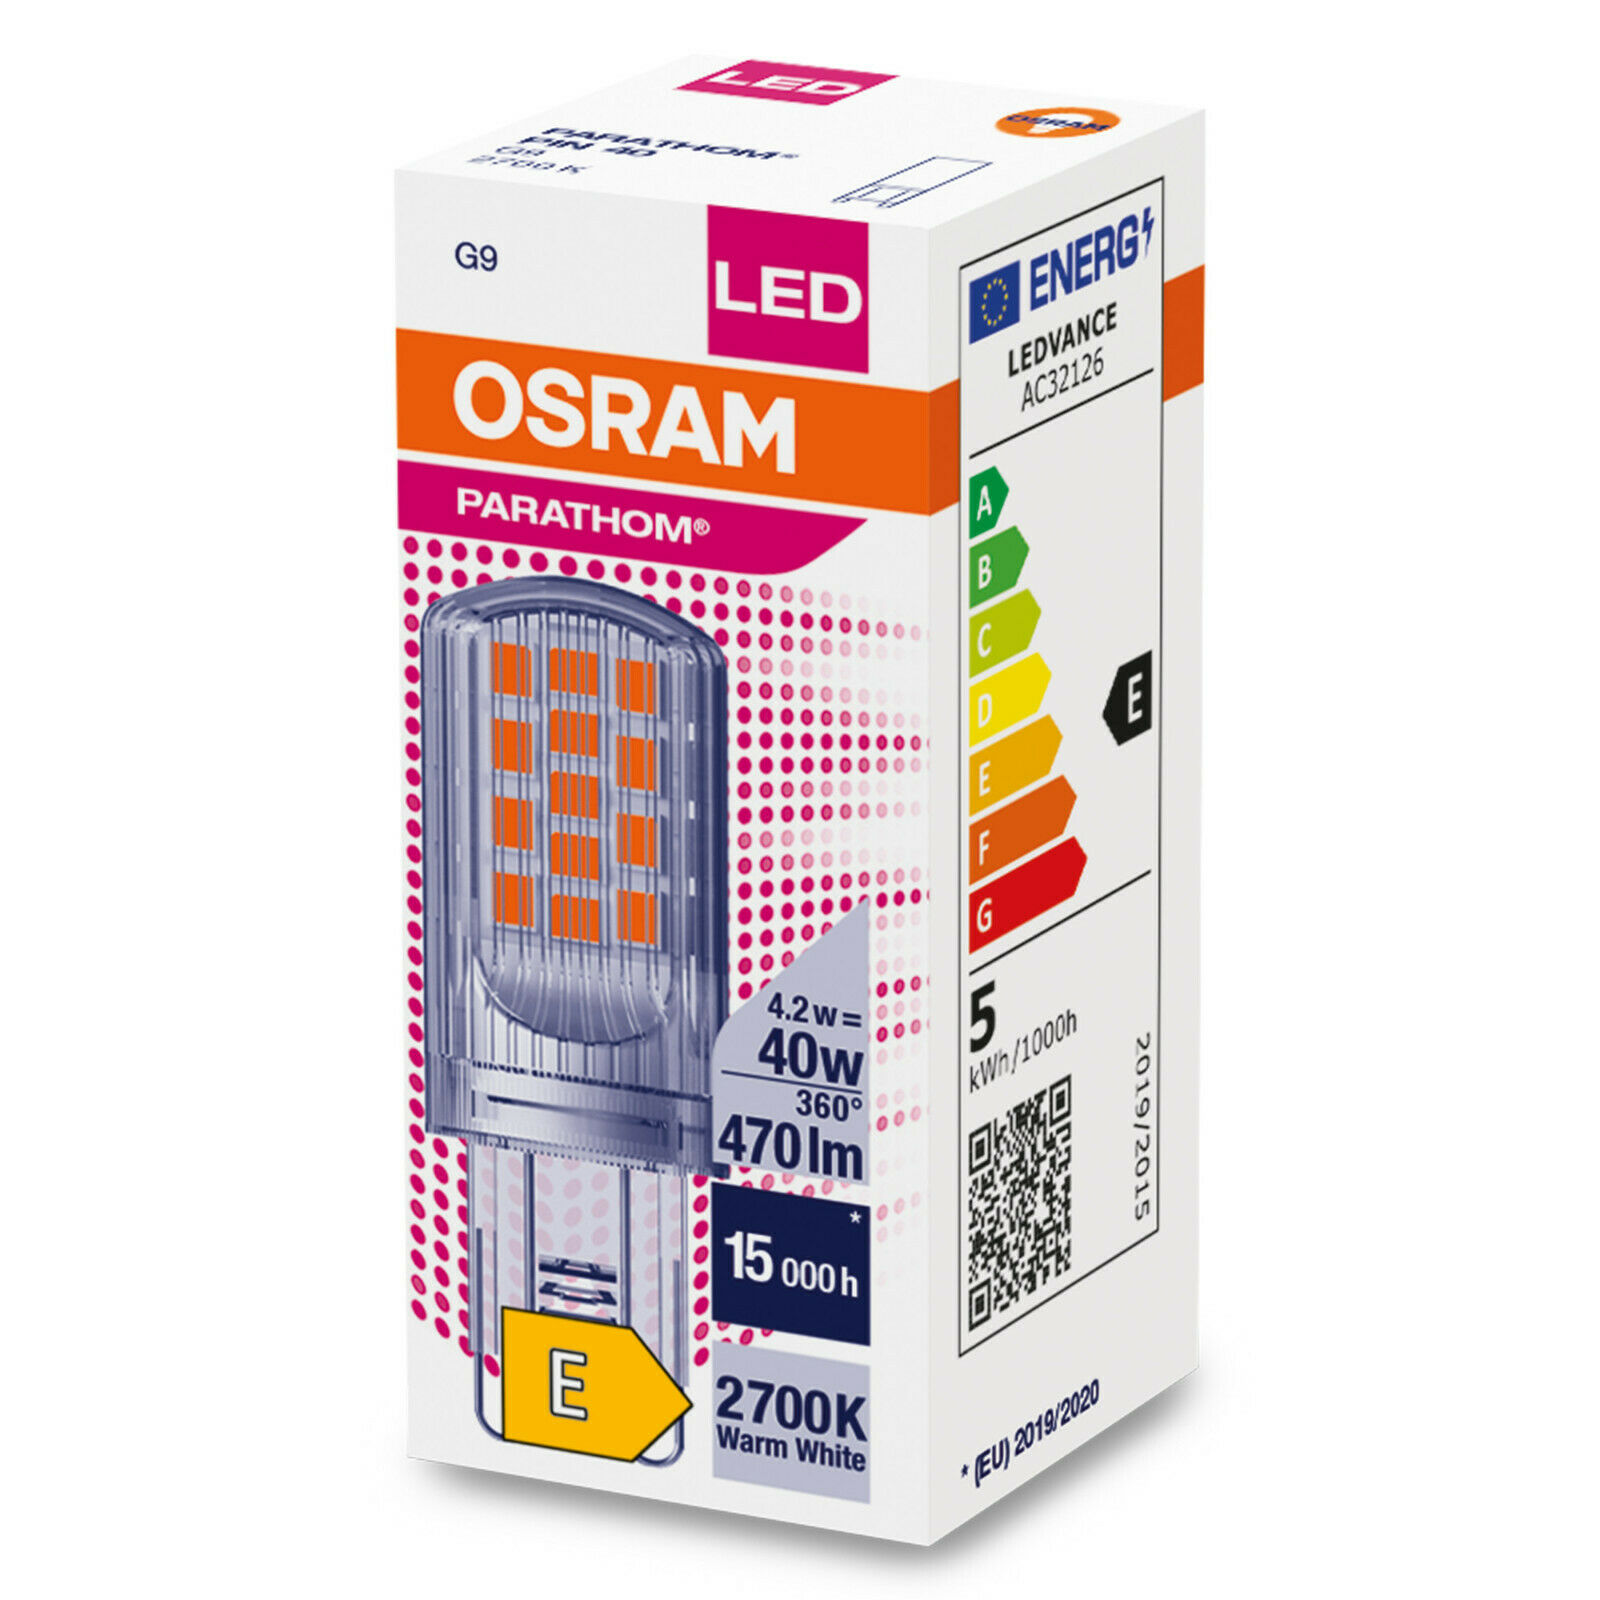 Osram LED Pin Lampe 4,2 Watt G9 827 warmweiß extra 